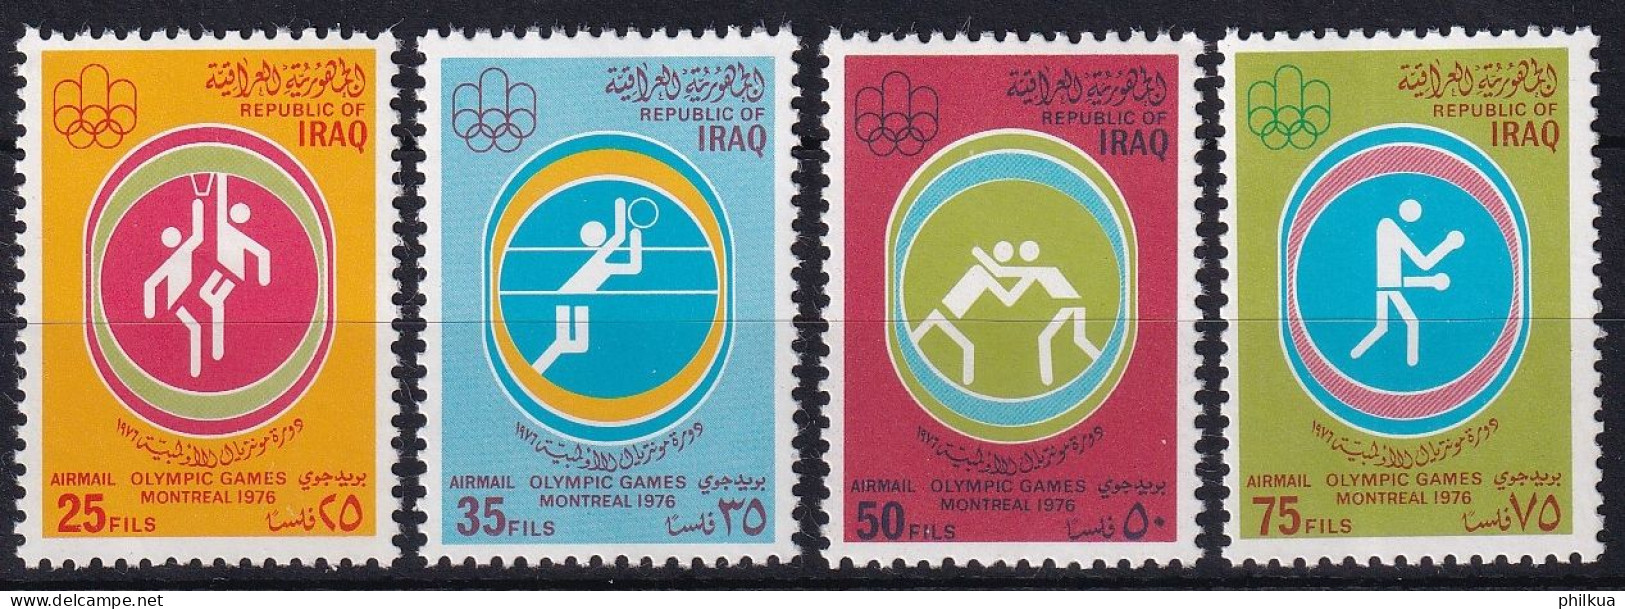 MiNr. 871 - 874 Irak 1976, 30. Juli. Olympische Sommerspiele, Montreal - Postfrisch/**/MNH - Irak